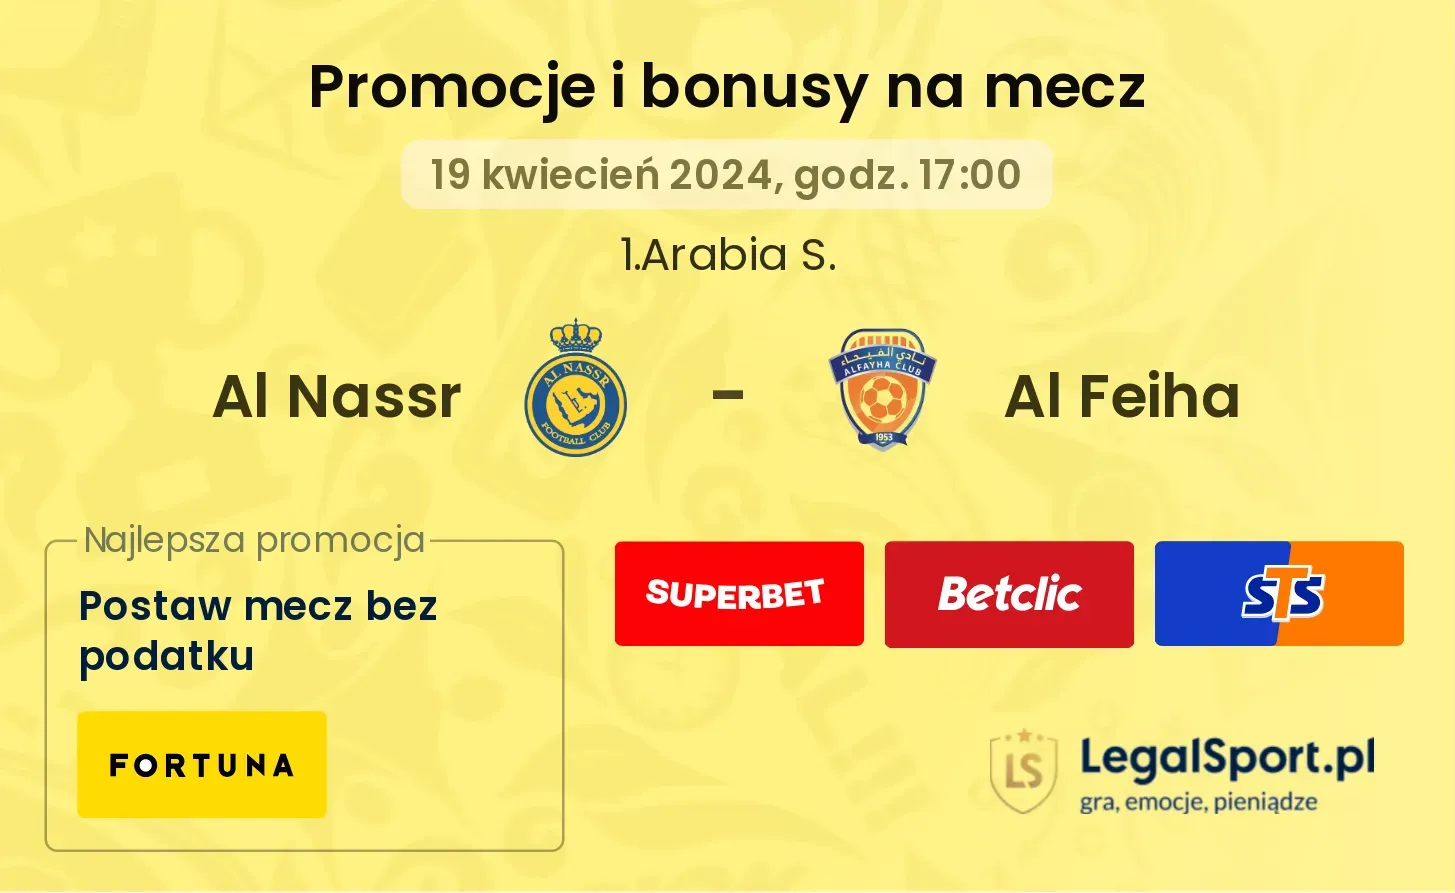 Al Nassr - Al Feiha promocje bonusy na mecz